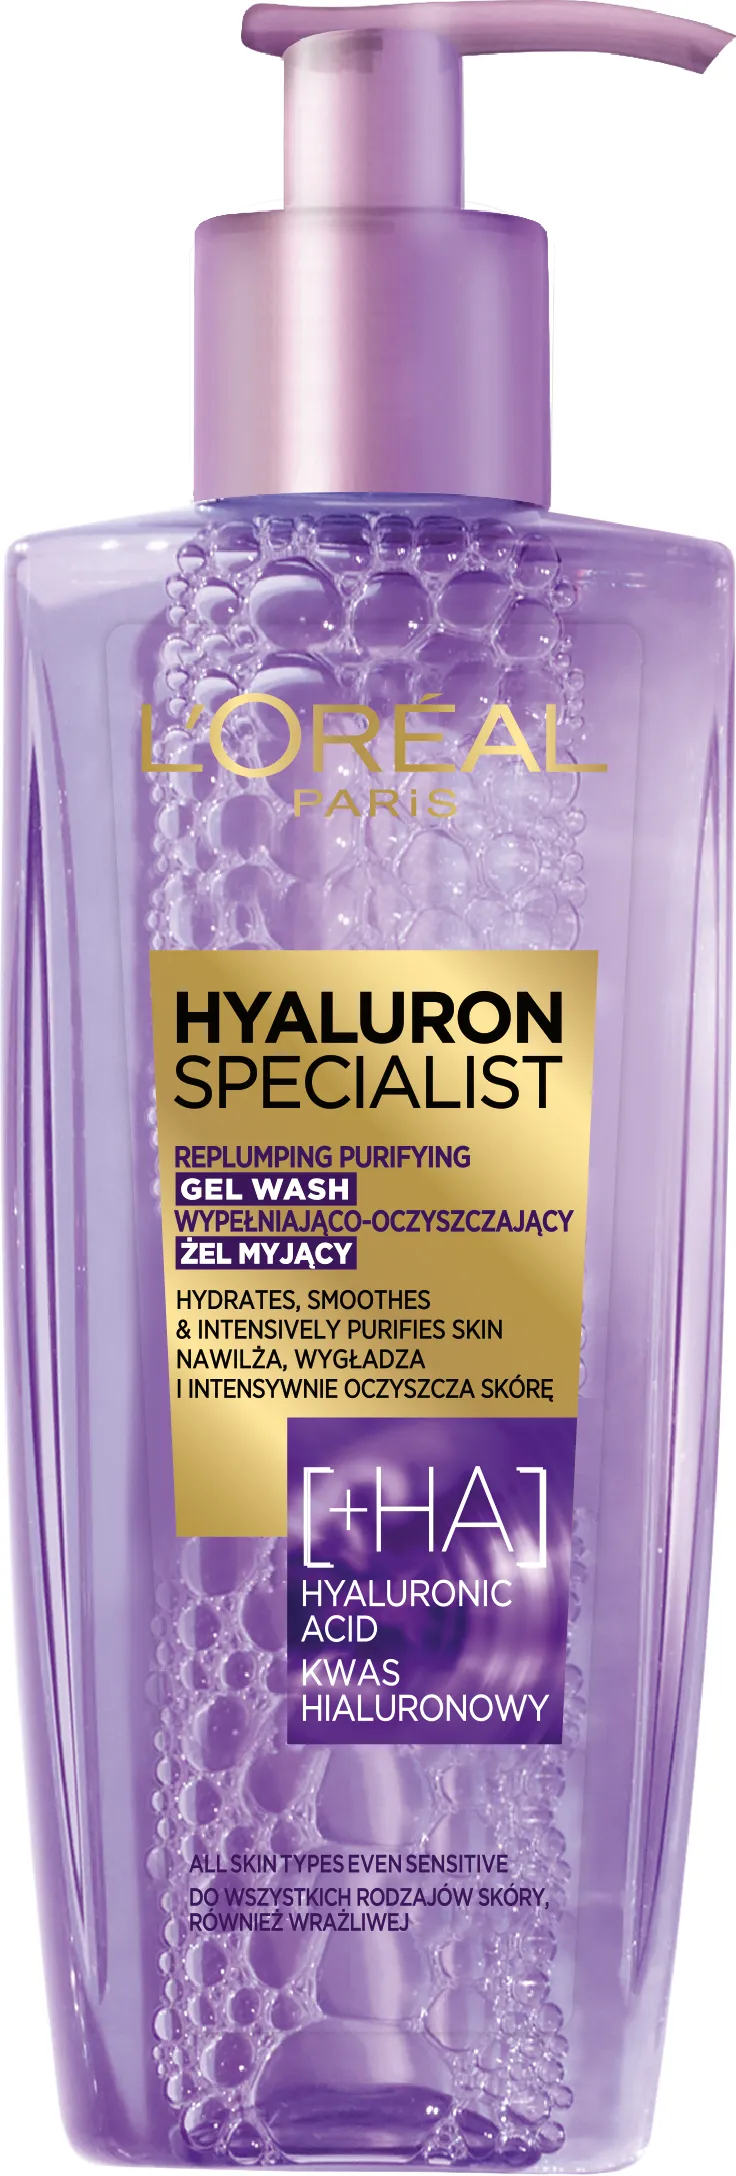 L`Oreal Paris Hyaluron Specialist Żel myjący do twarzy, 200 ml